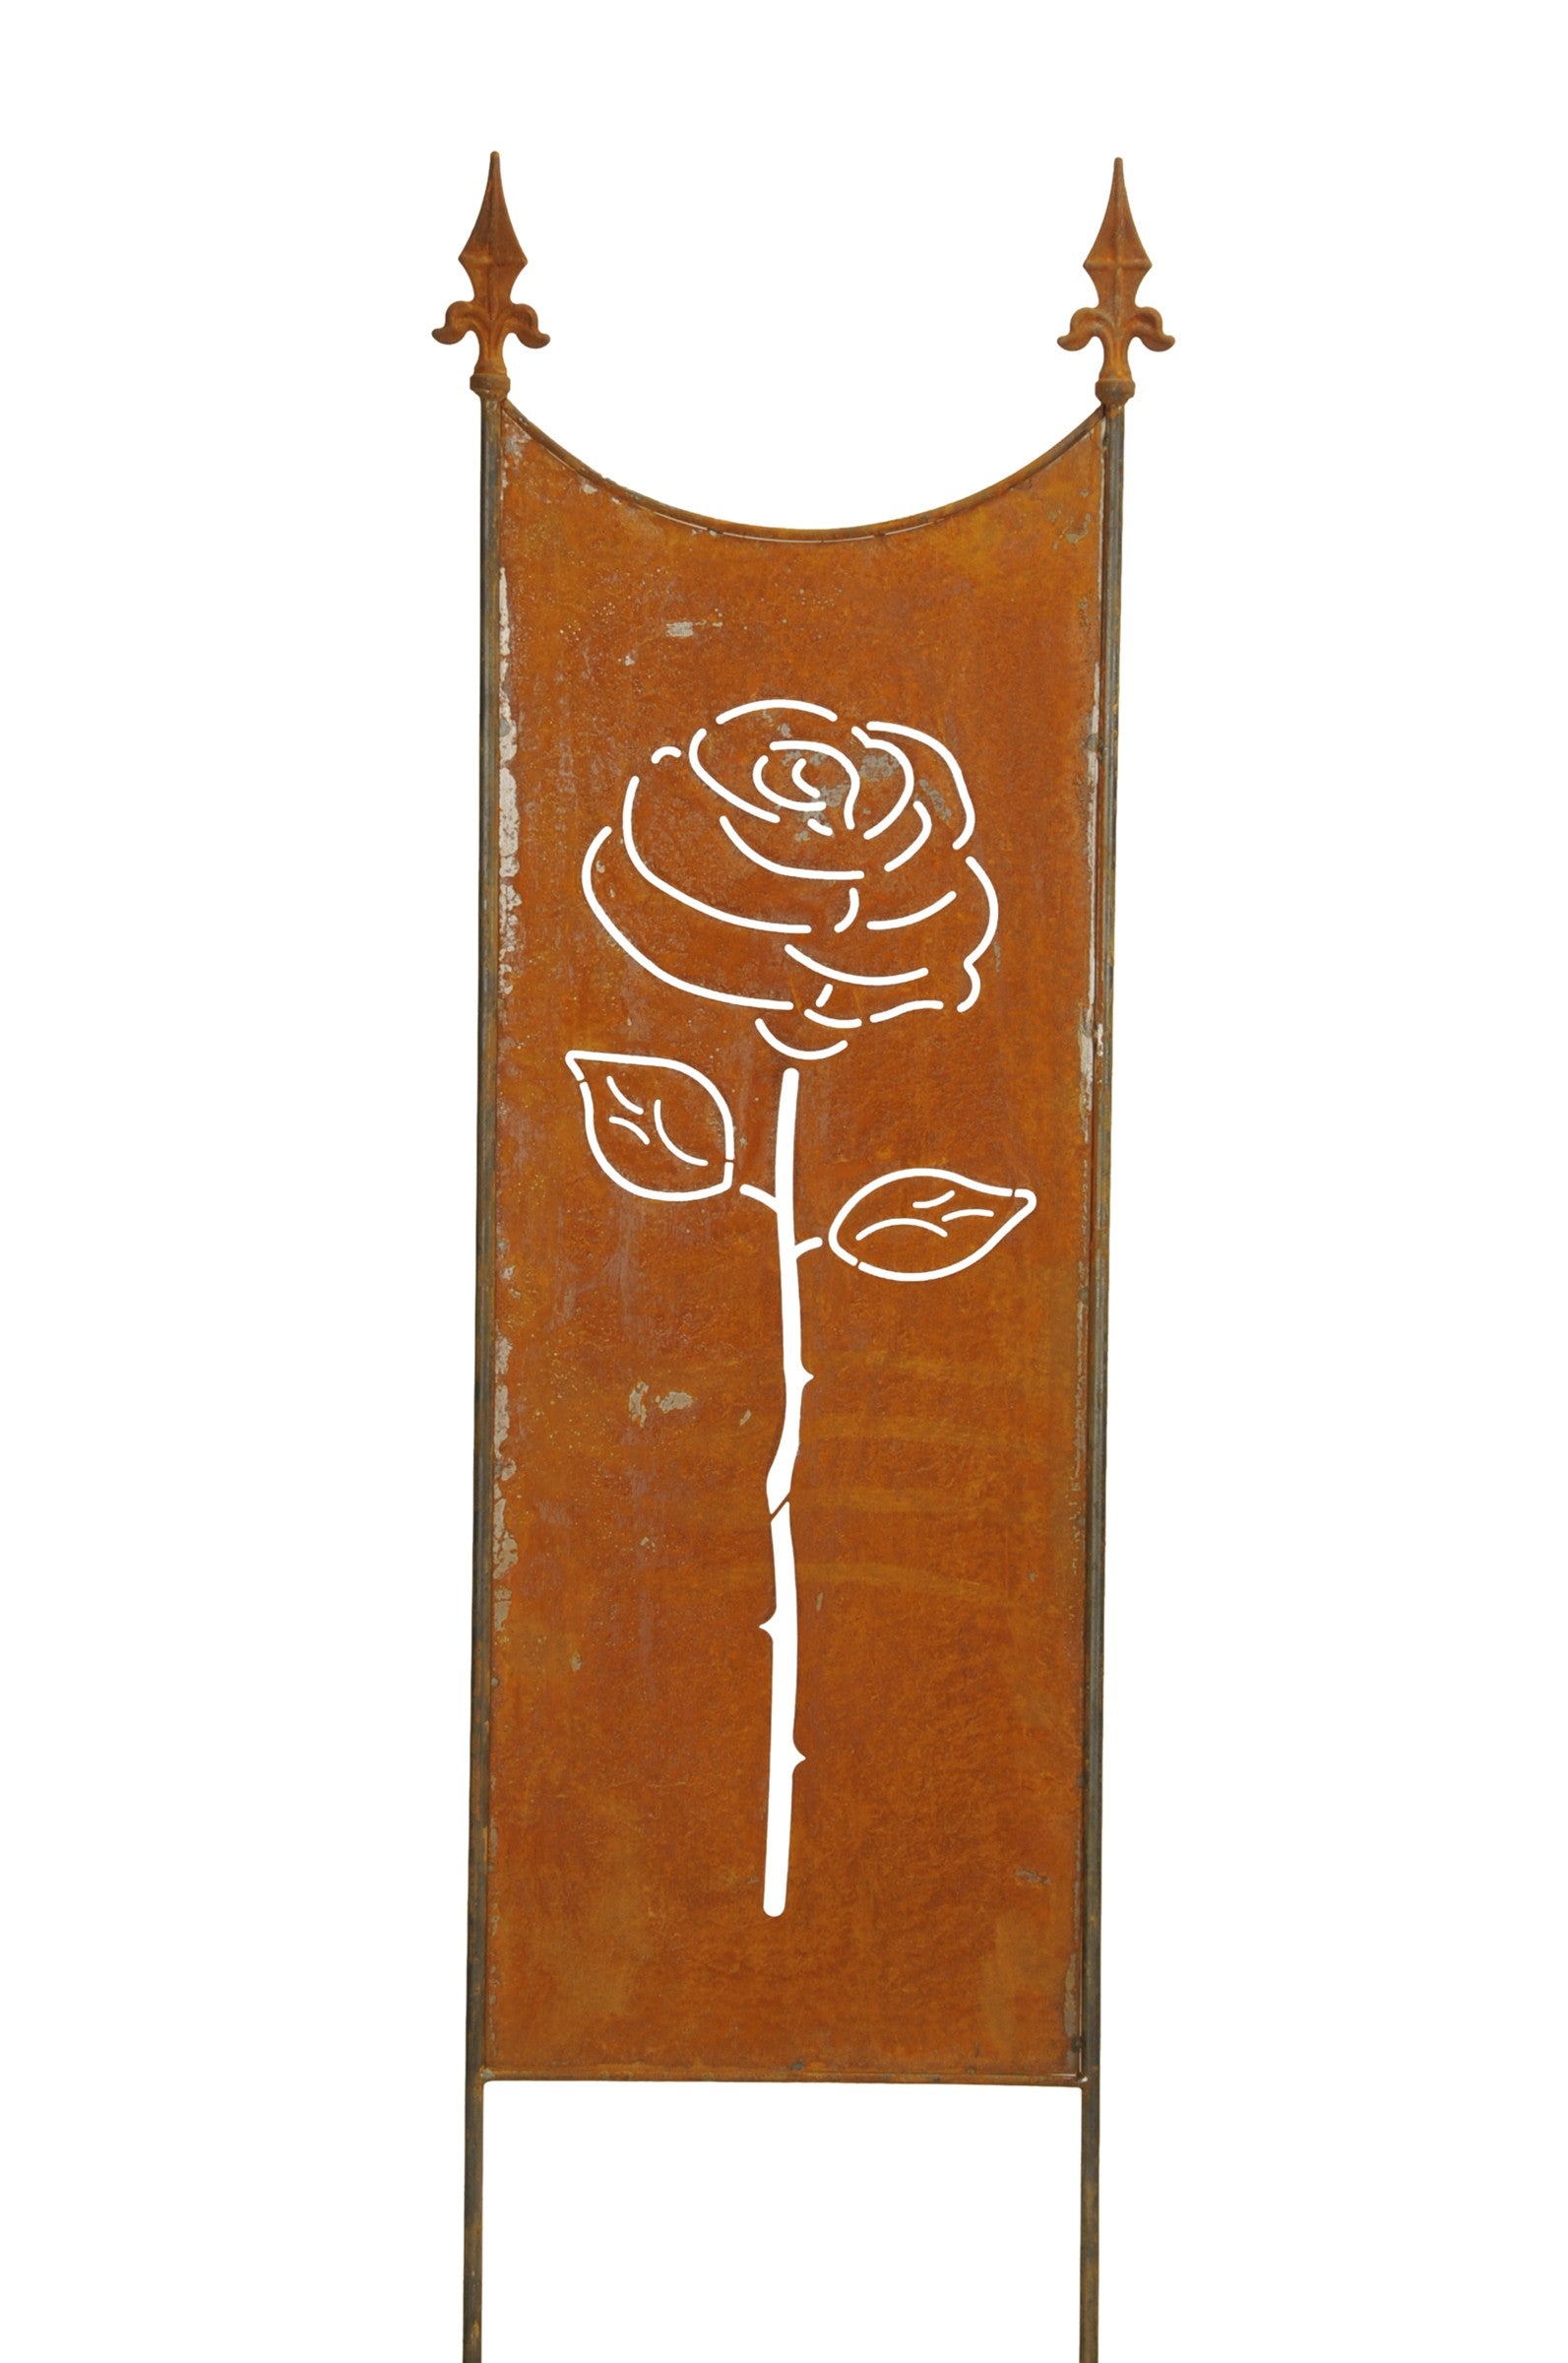 Stele Metall Edelrost Sichtschutz "Rose" Windschutz H118cm